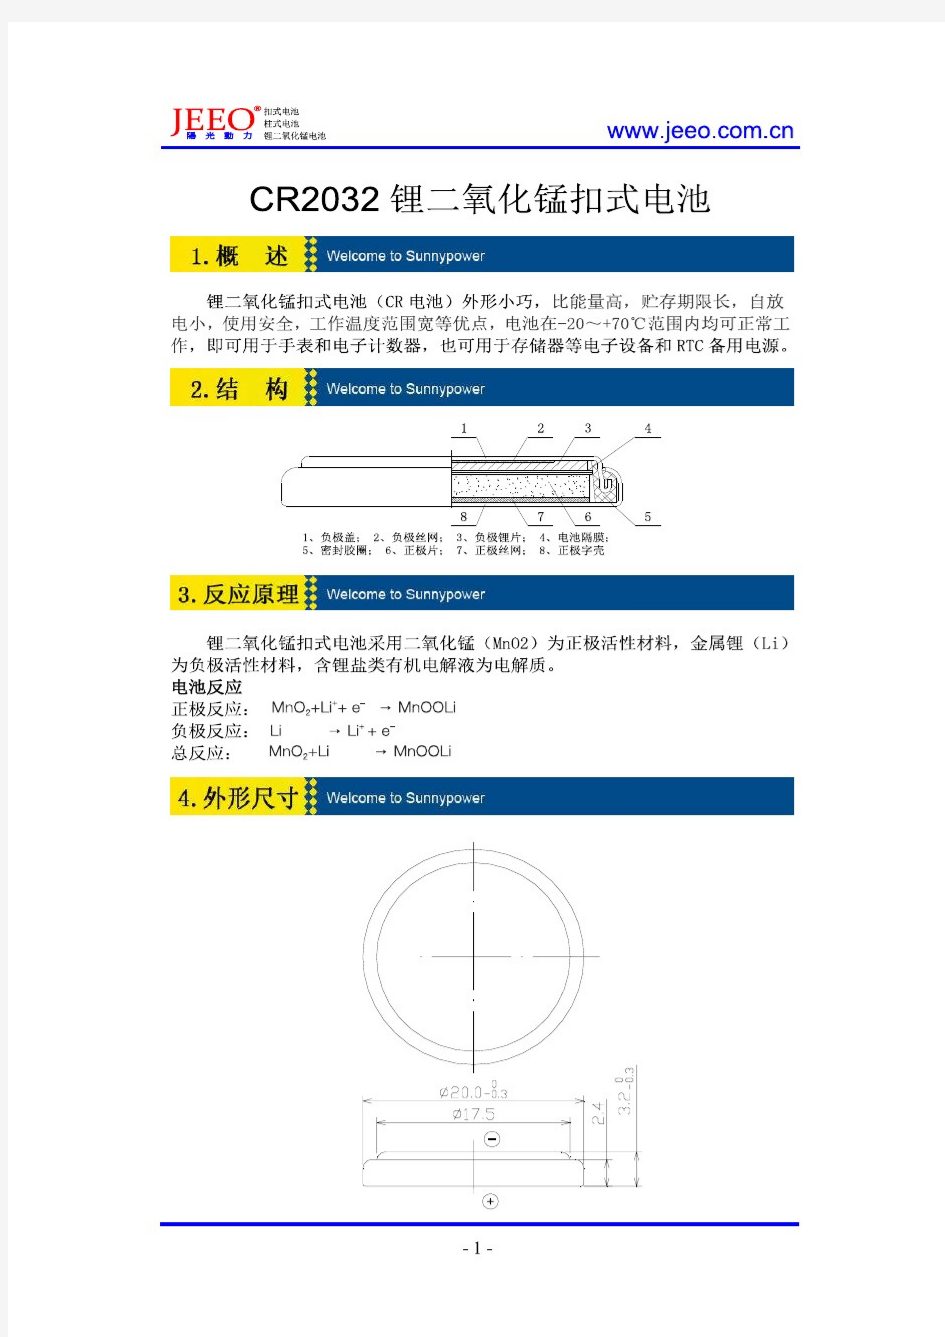 CR2032 锂二氧化锰扣式电池技术规格书